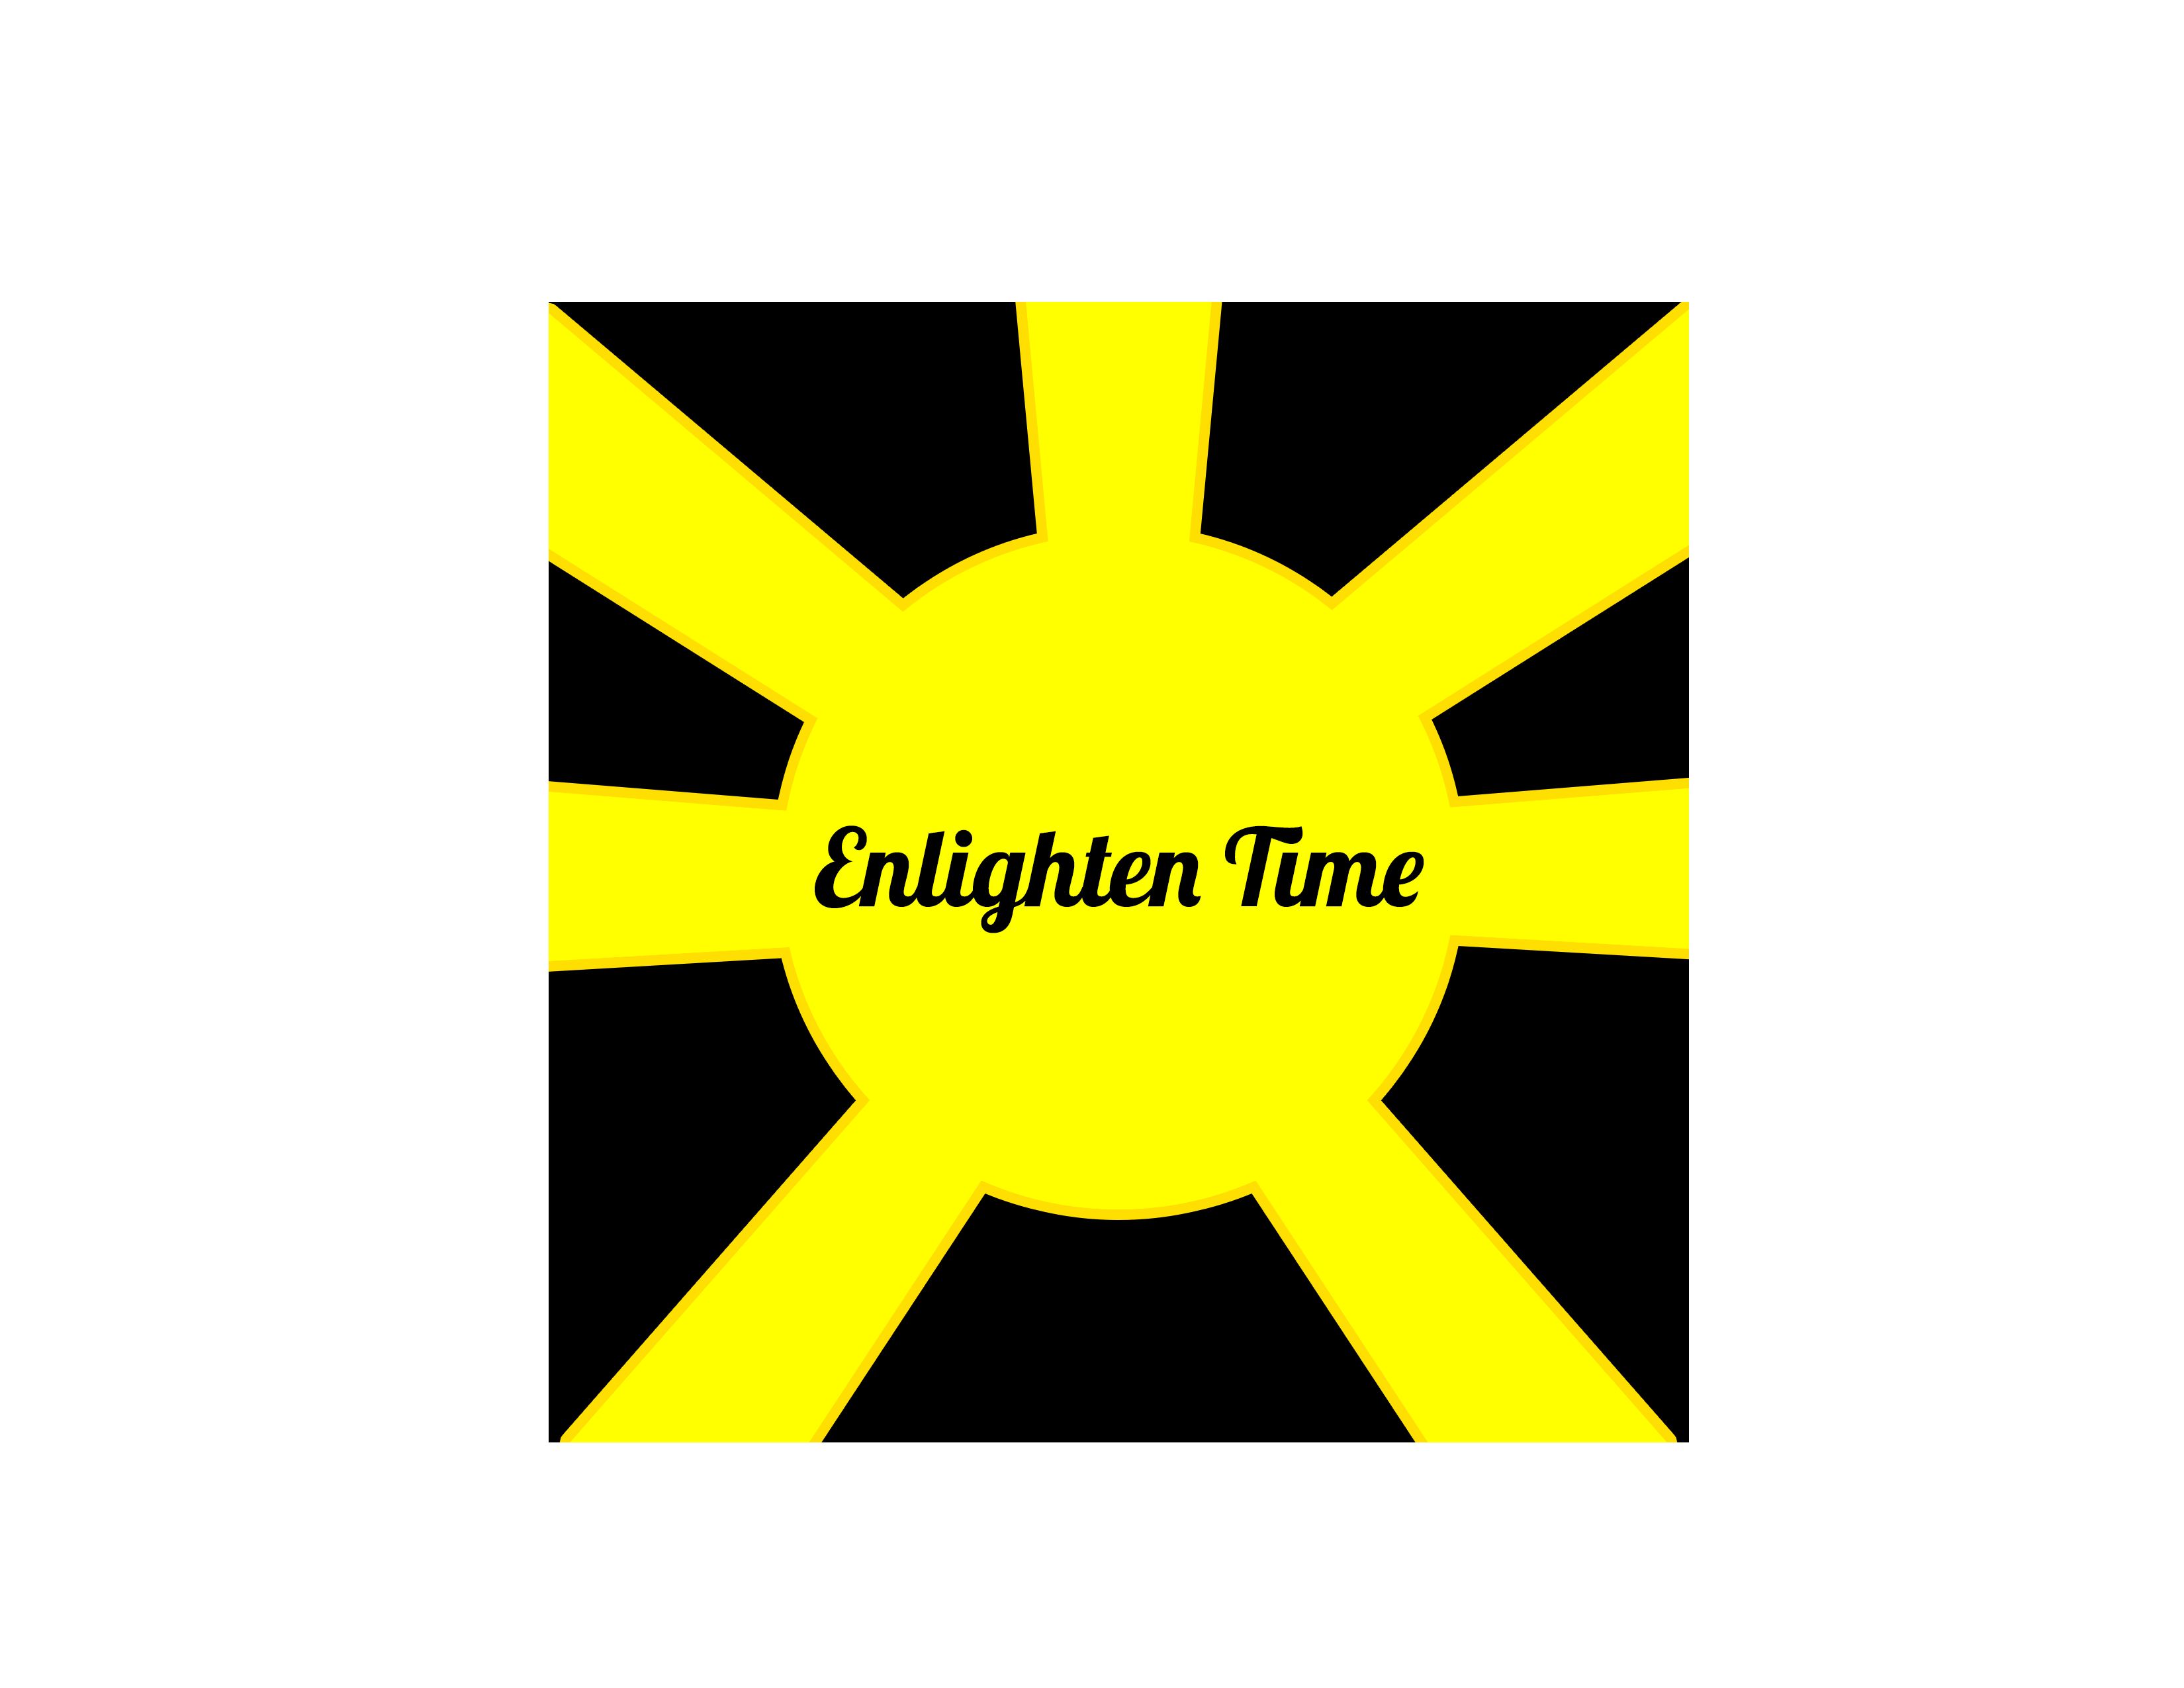 Enlighten your life with enlighten time